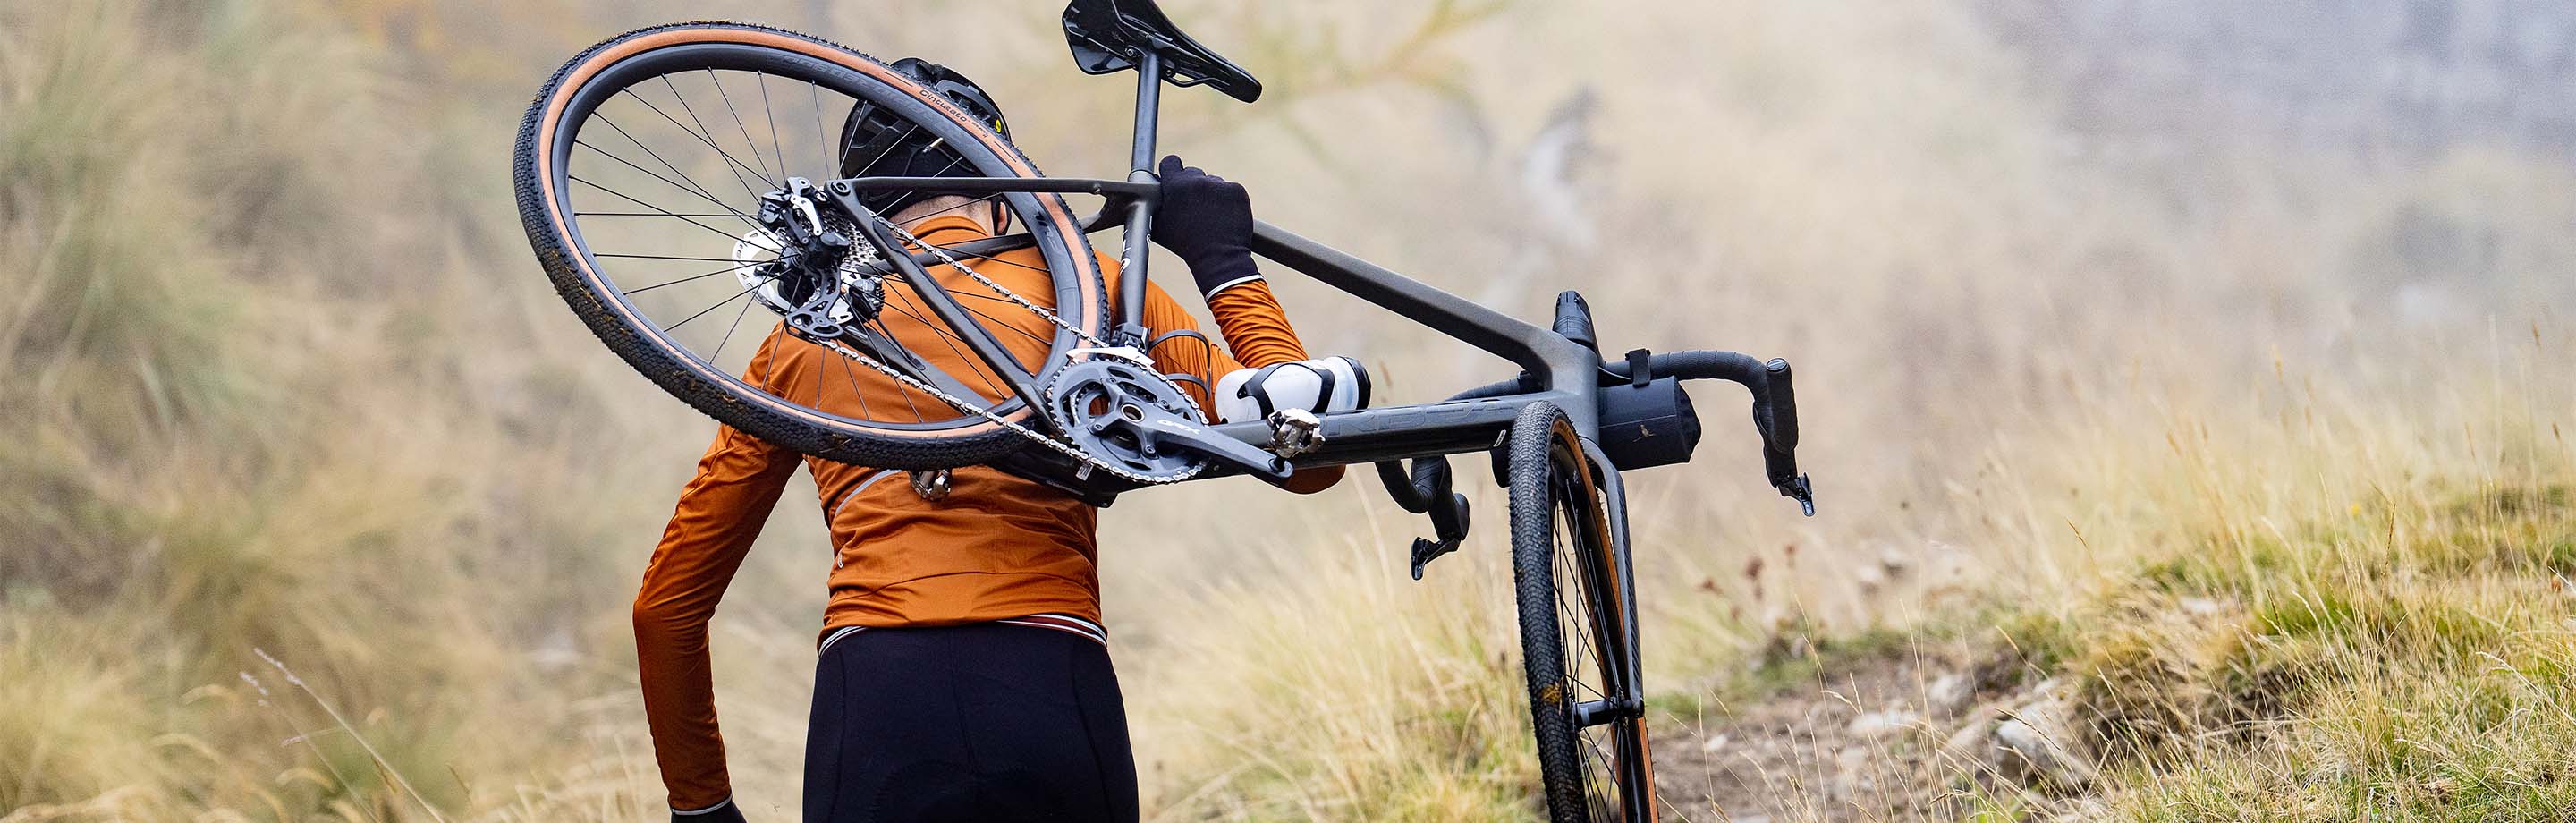 Shimano – Componenti, accessori per biciclette e abbigliamento ad alte prestazioni